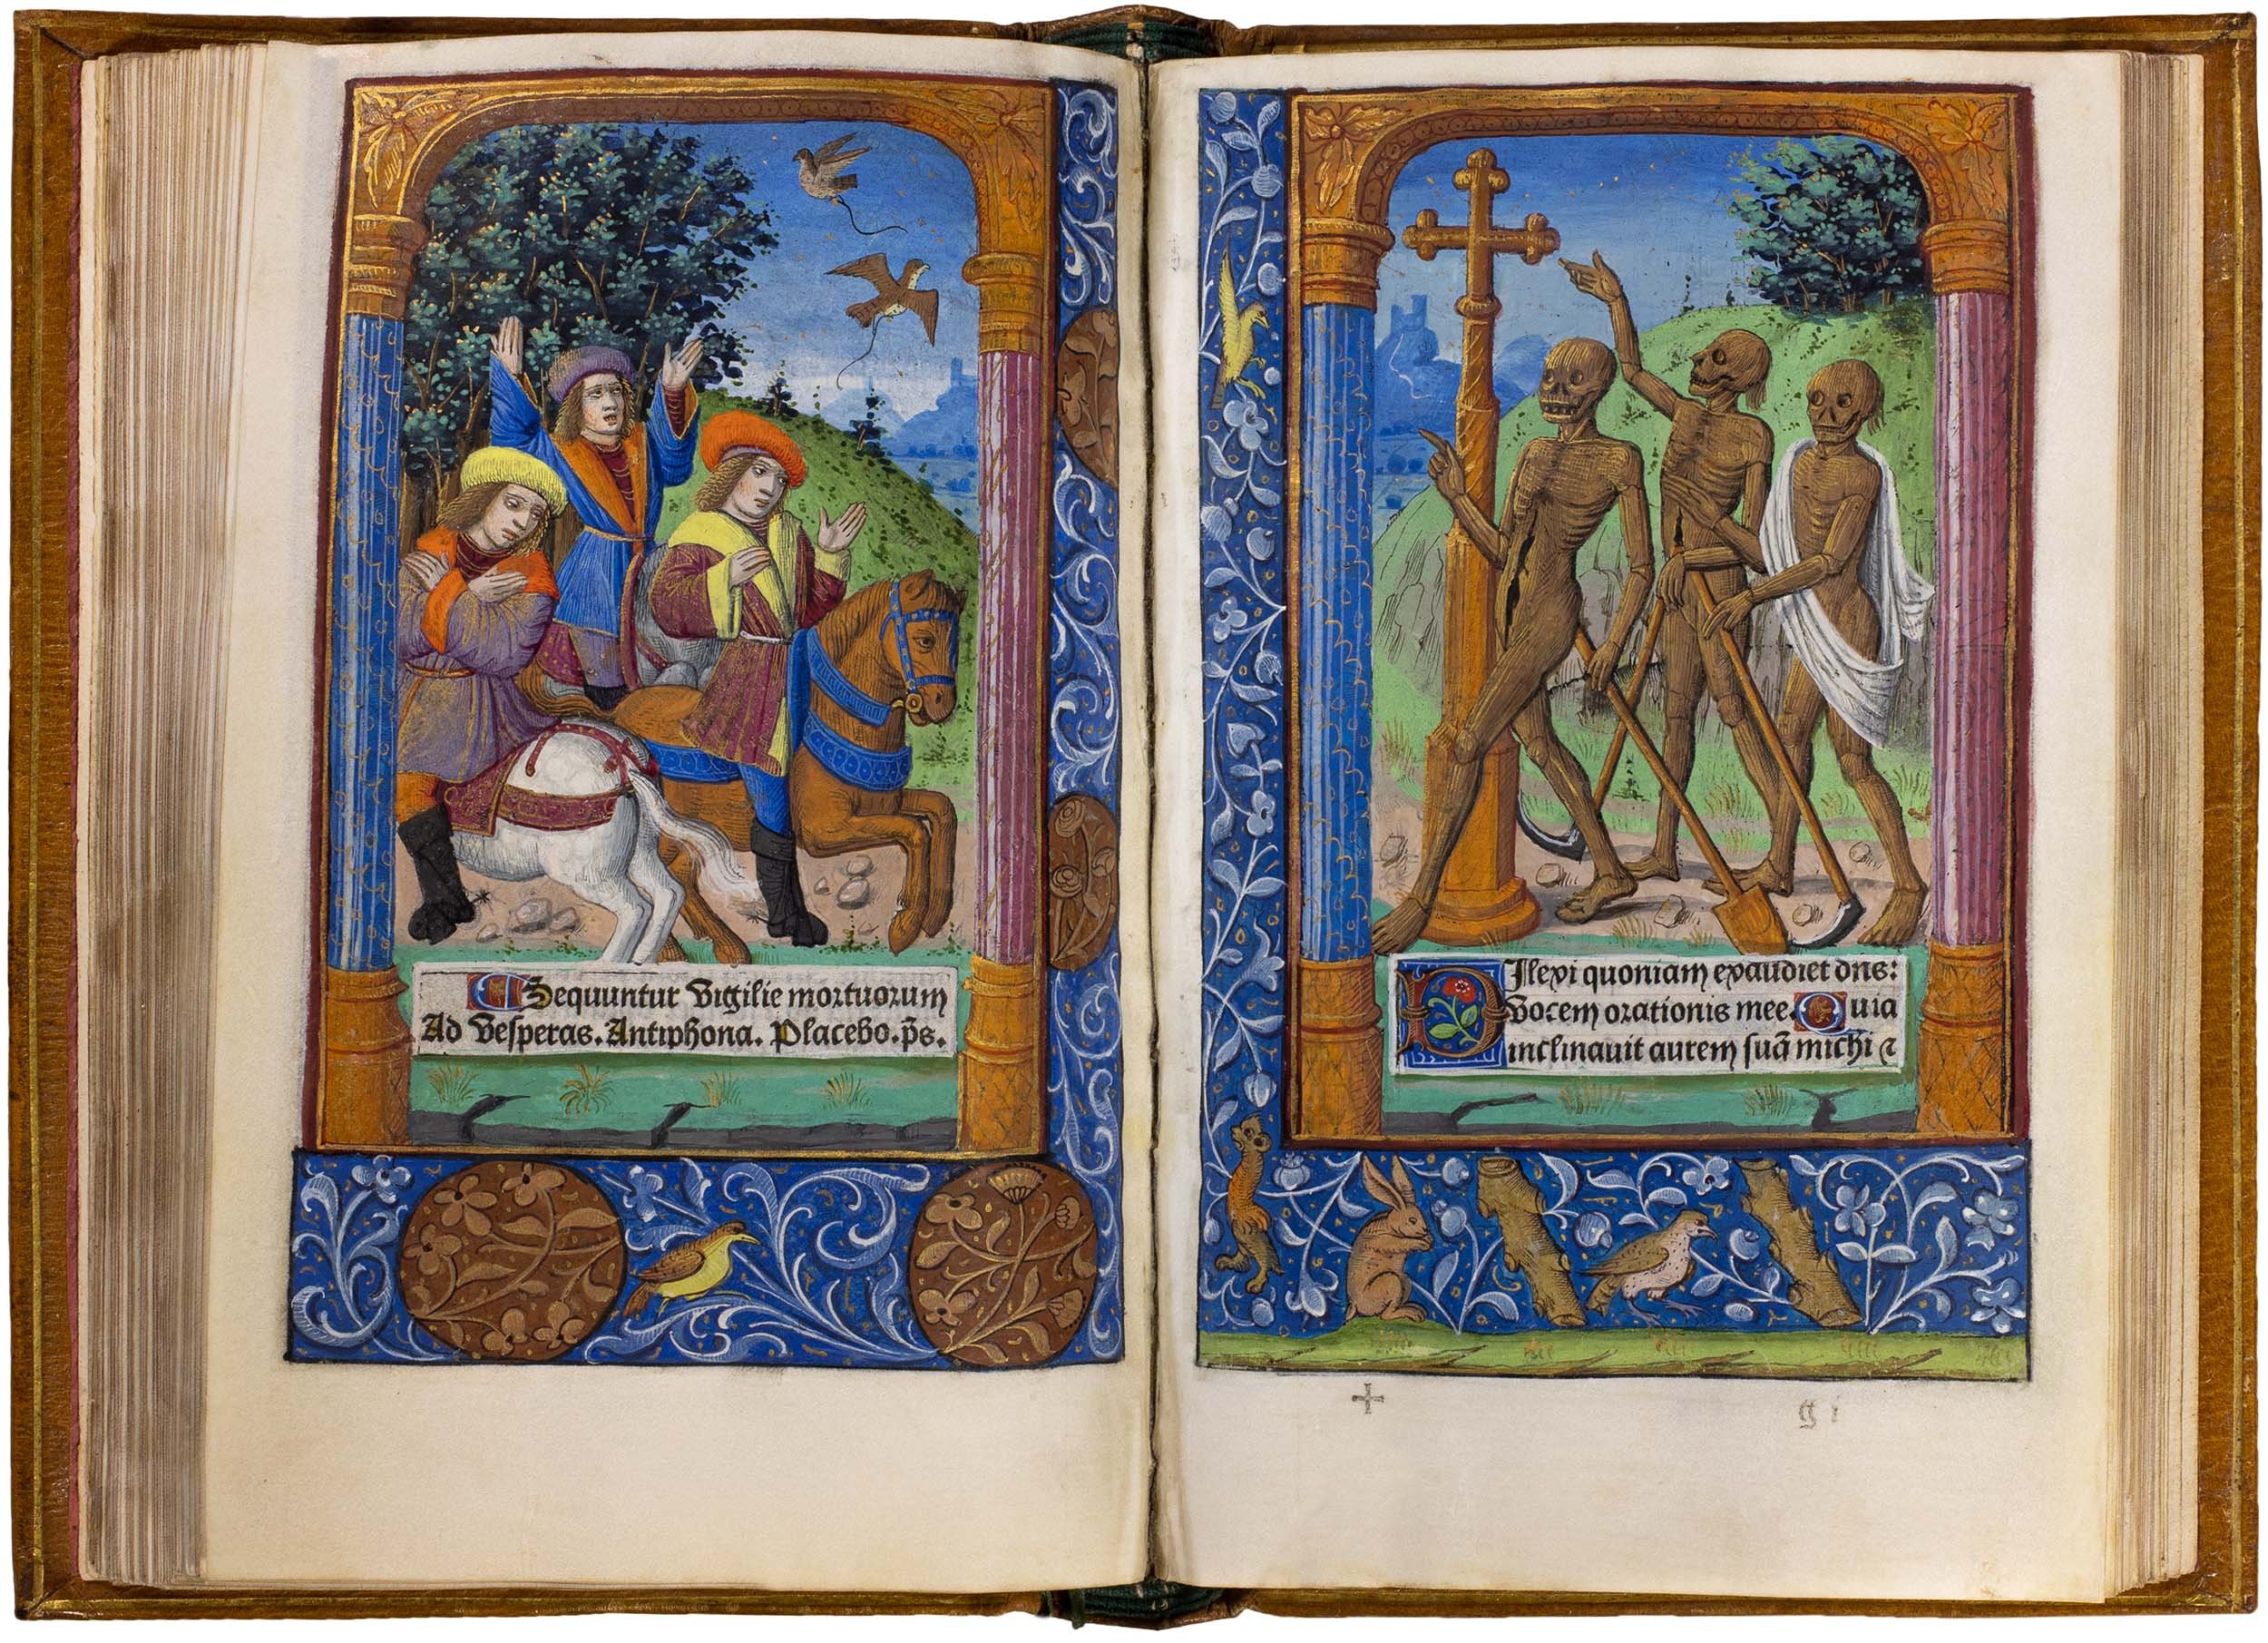 Horae-bmv-pigouchet-19-april-1494-pigouchet-robert-gaguin-illuminated-vellum-copy-61.jpg